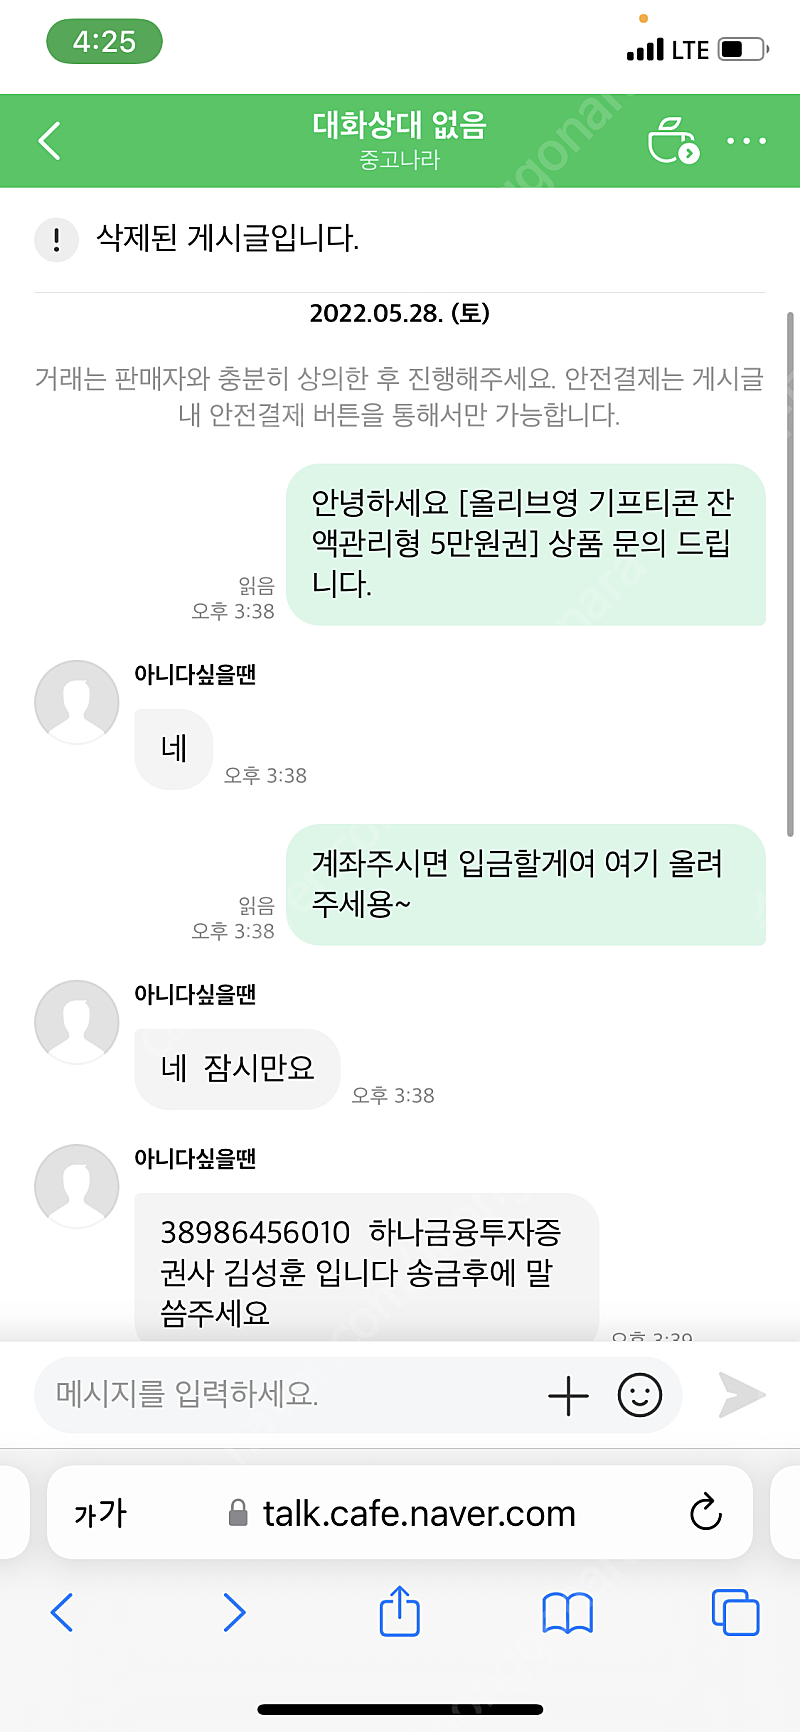 올리브영 기프티콘 사기꾼 범죄자 김성훈 하나금융투자 38986456010